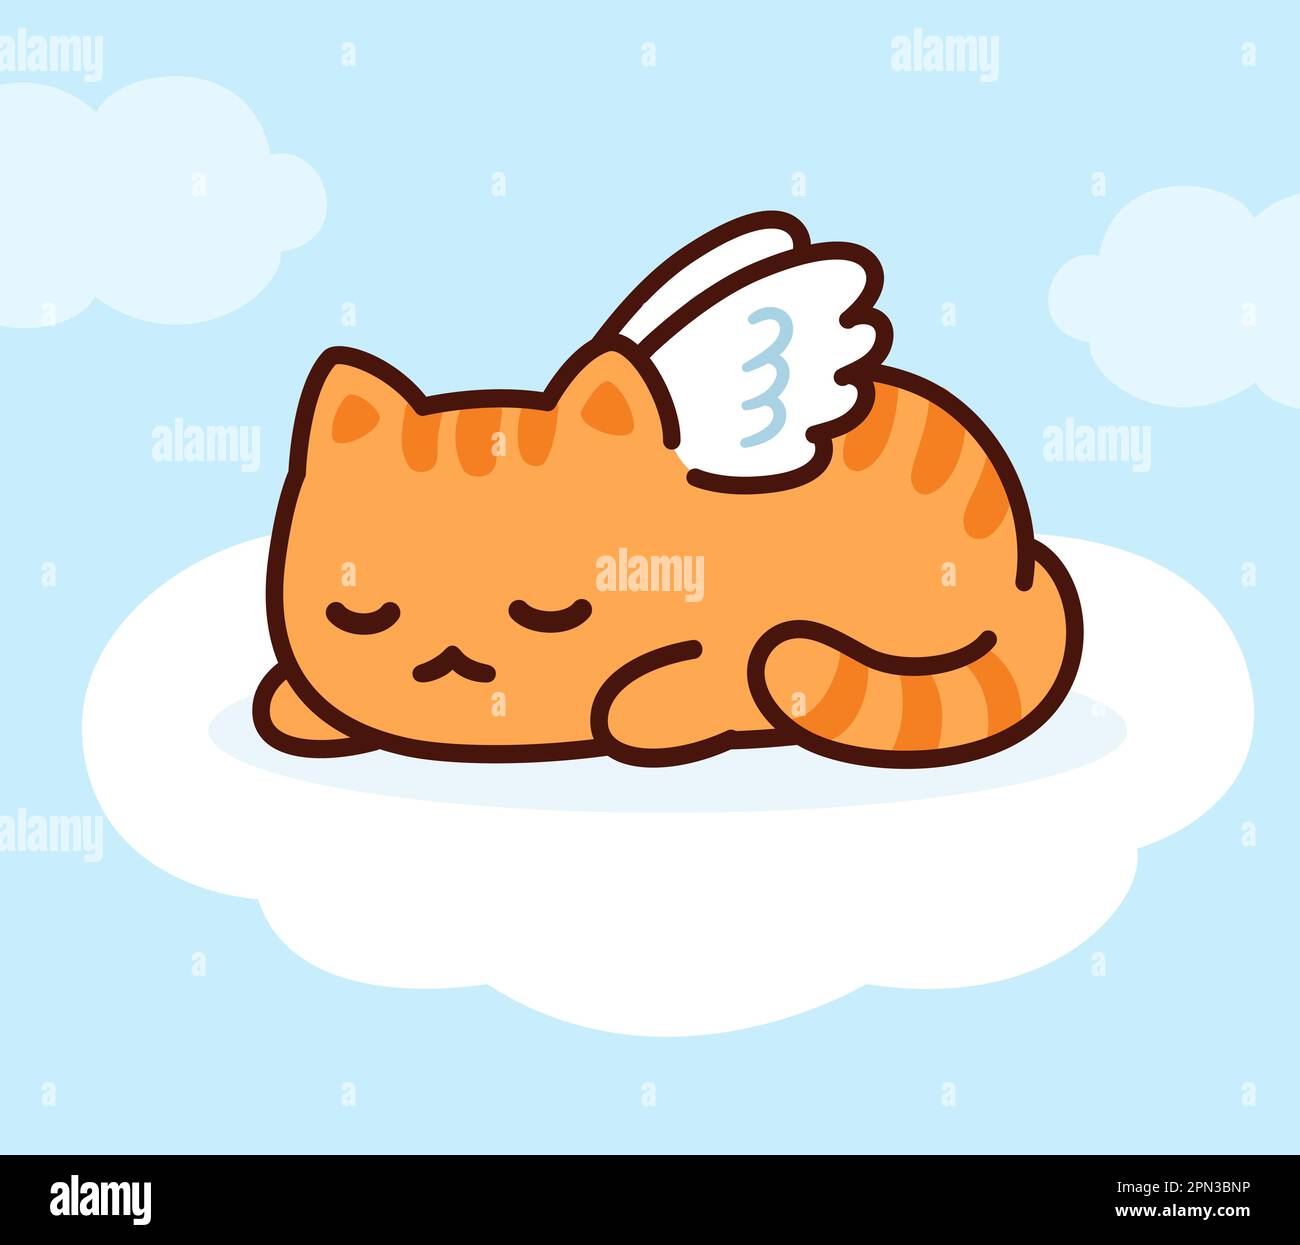 Carino angelo gatto con le ali che dormono sulla nuvola in cielo. Biglietto d'auguri per la perdita della morte dell'animale domestico. Disegno gattino, illustrazione vettoriale. Illustrazione Vettoriale